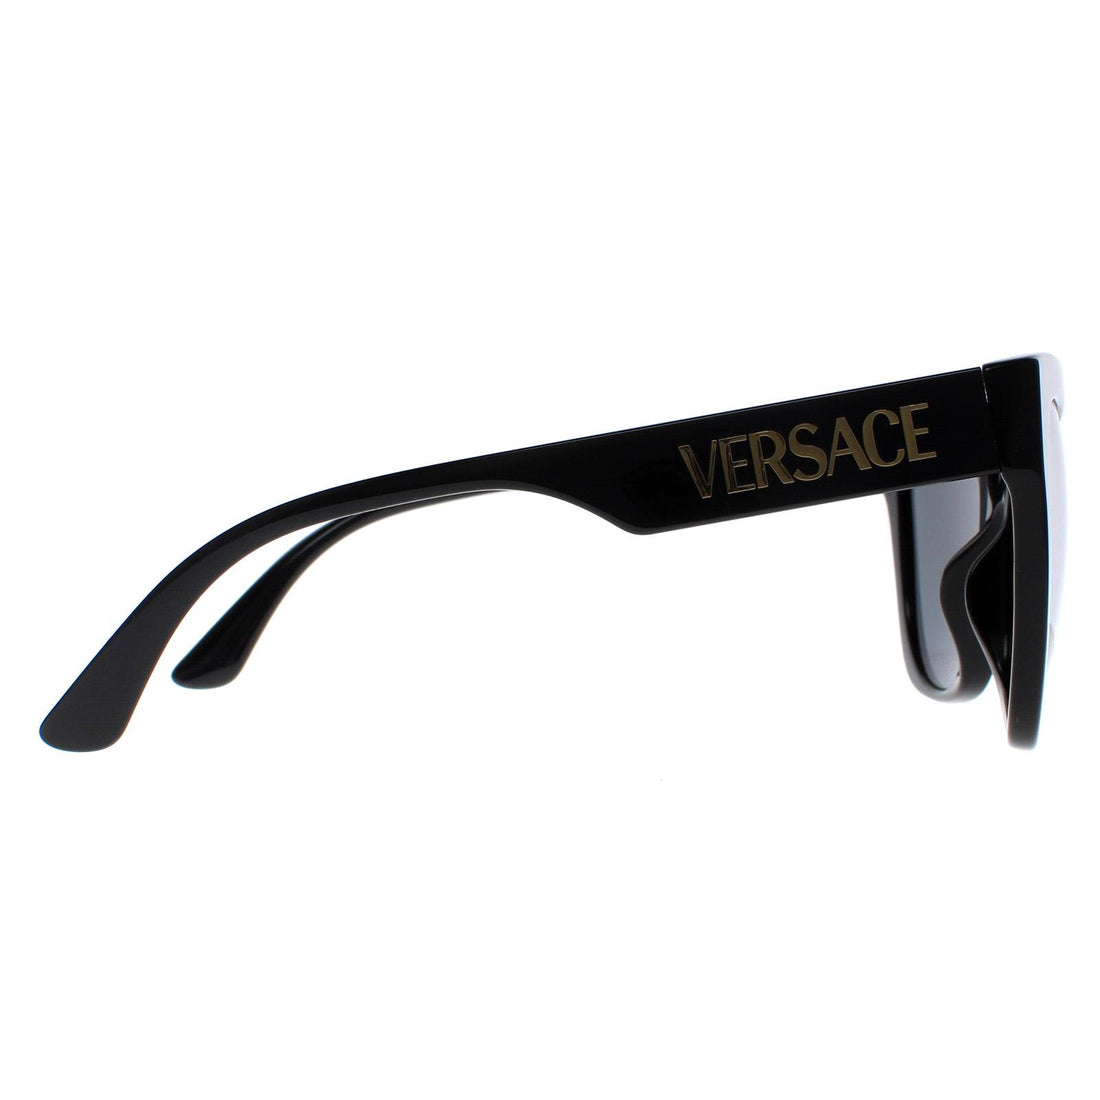 Versace Sunglasses VE4417U GB1/87 Black Dark Grey